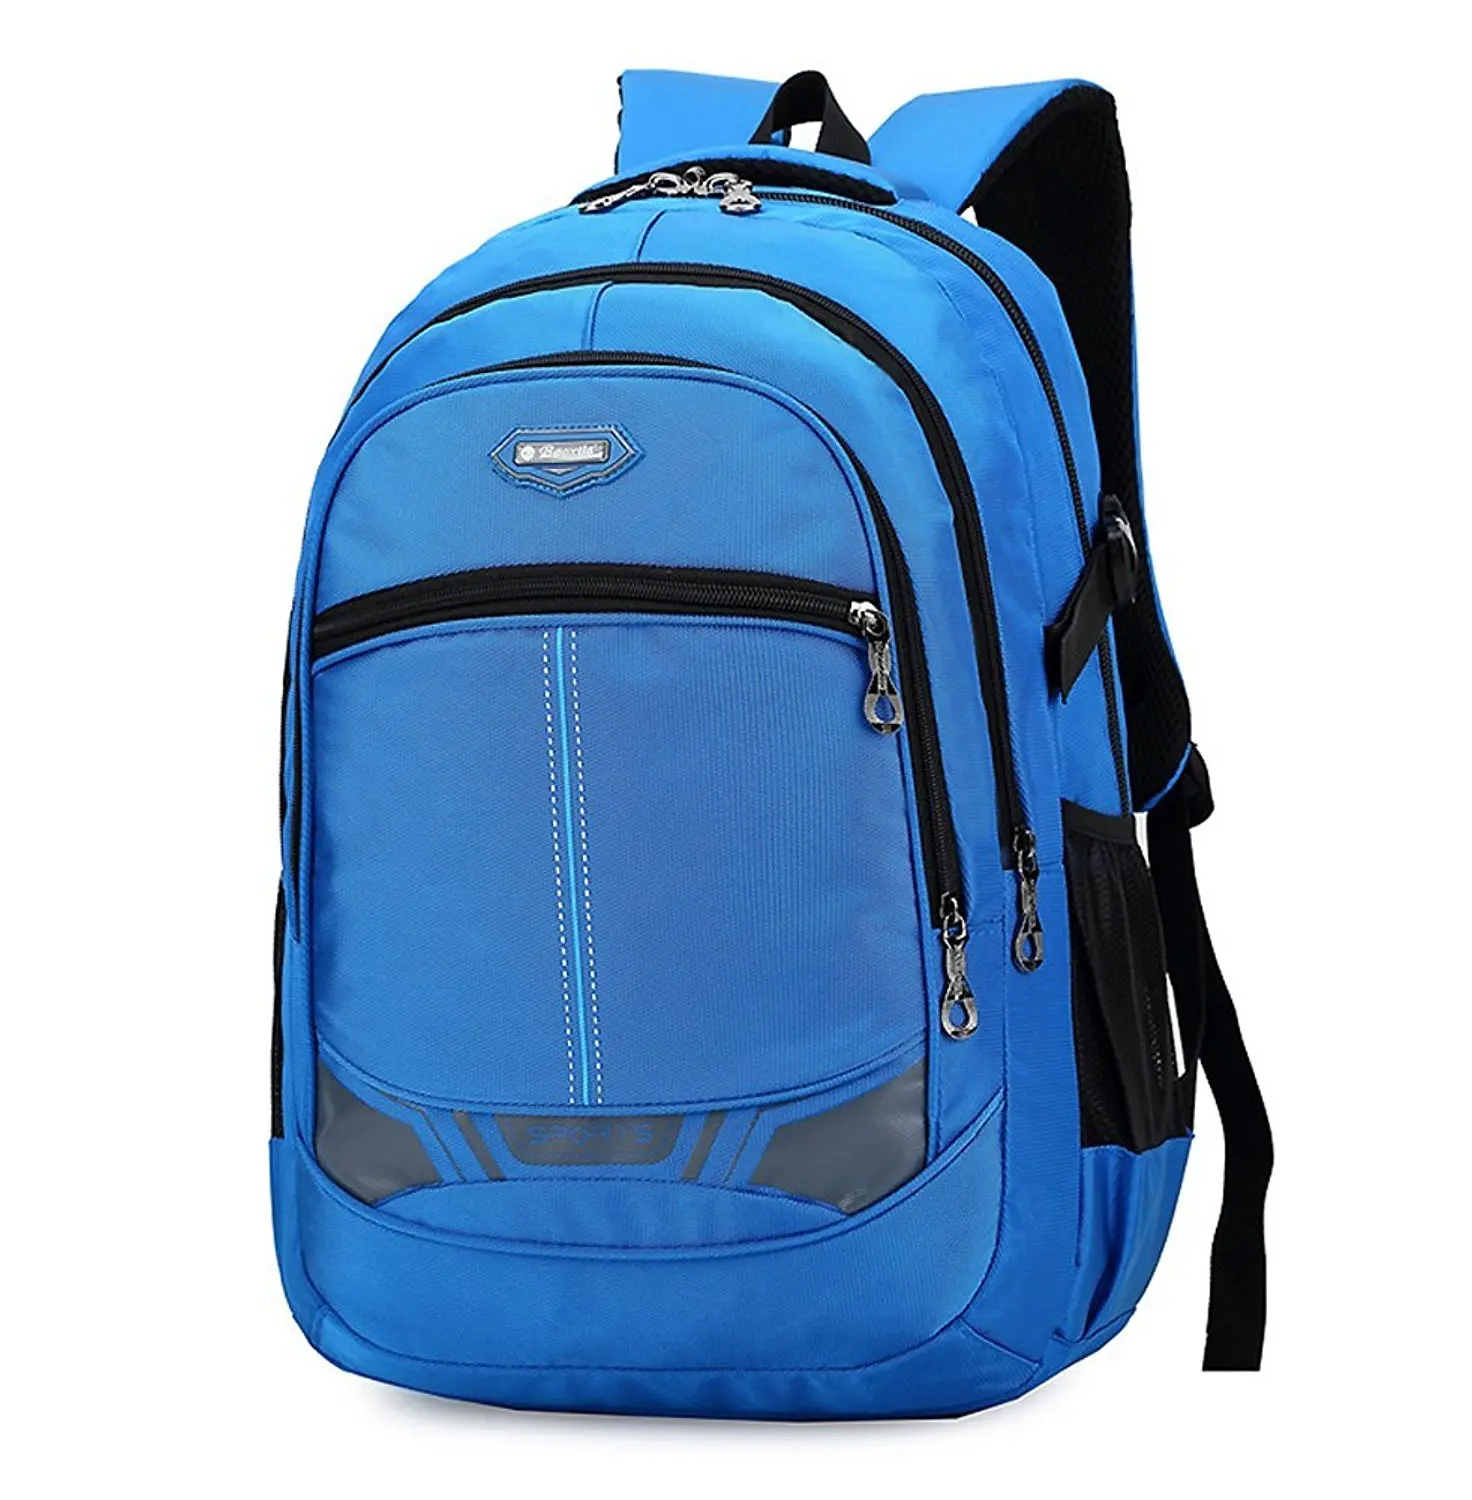 Buy Dlerxi Cool Laptop Backpacks for College School Bag Teen Boys ...